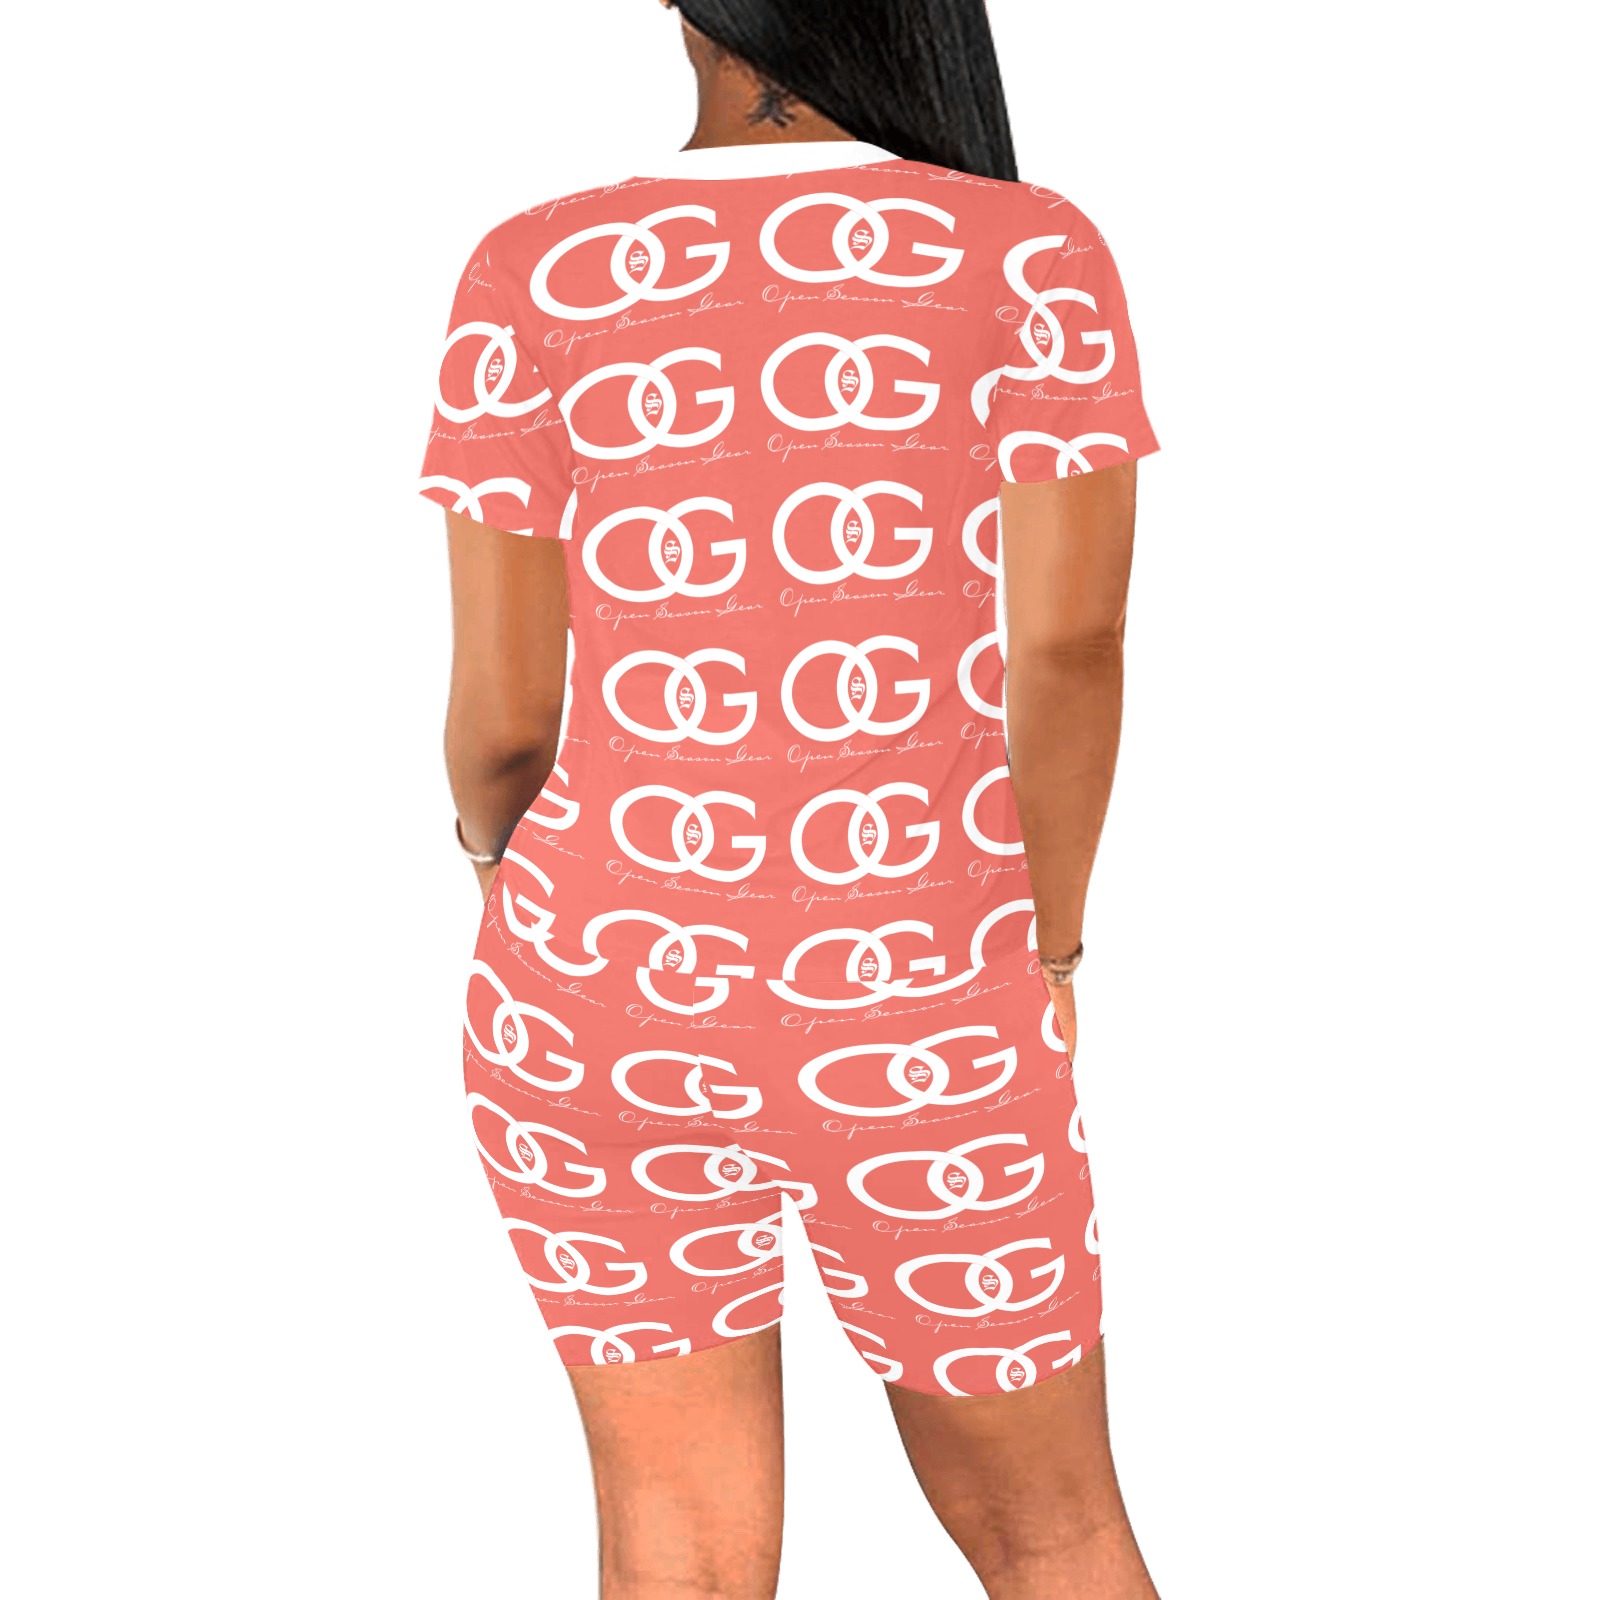 Peach OSG Shirt & Shorts Set Women's Short Yoga Set